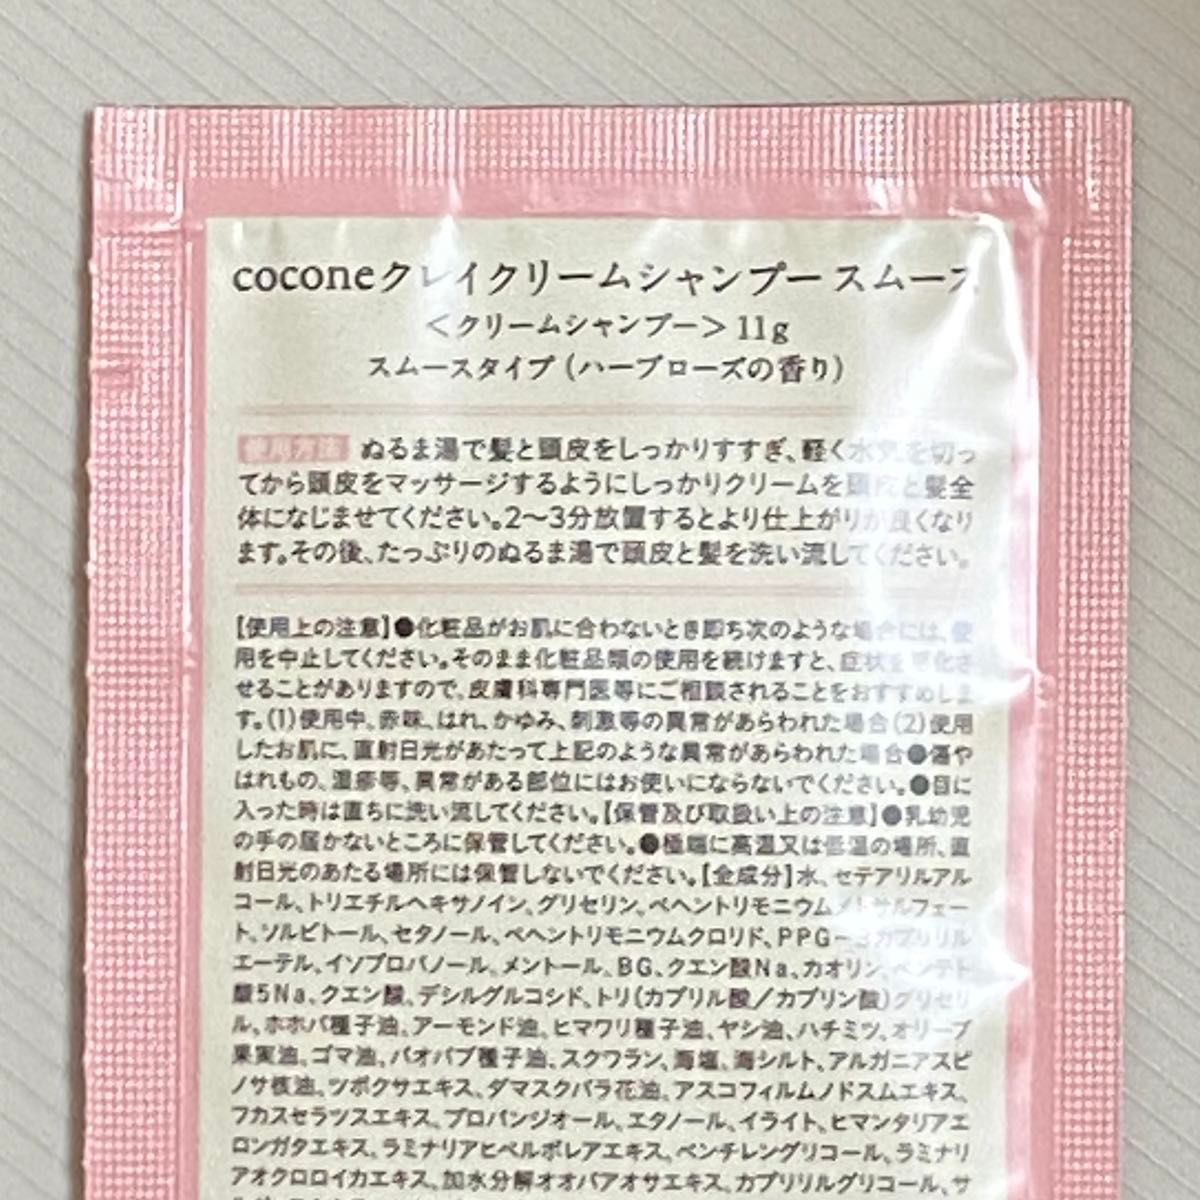 【２種各1包】cocone/ココネクレイクリームシャンプーモイストスムースお試しトライアル①